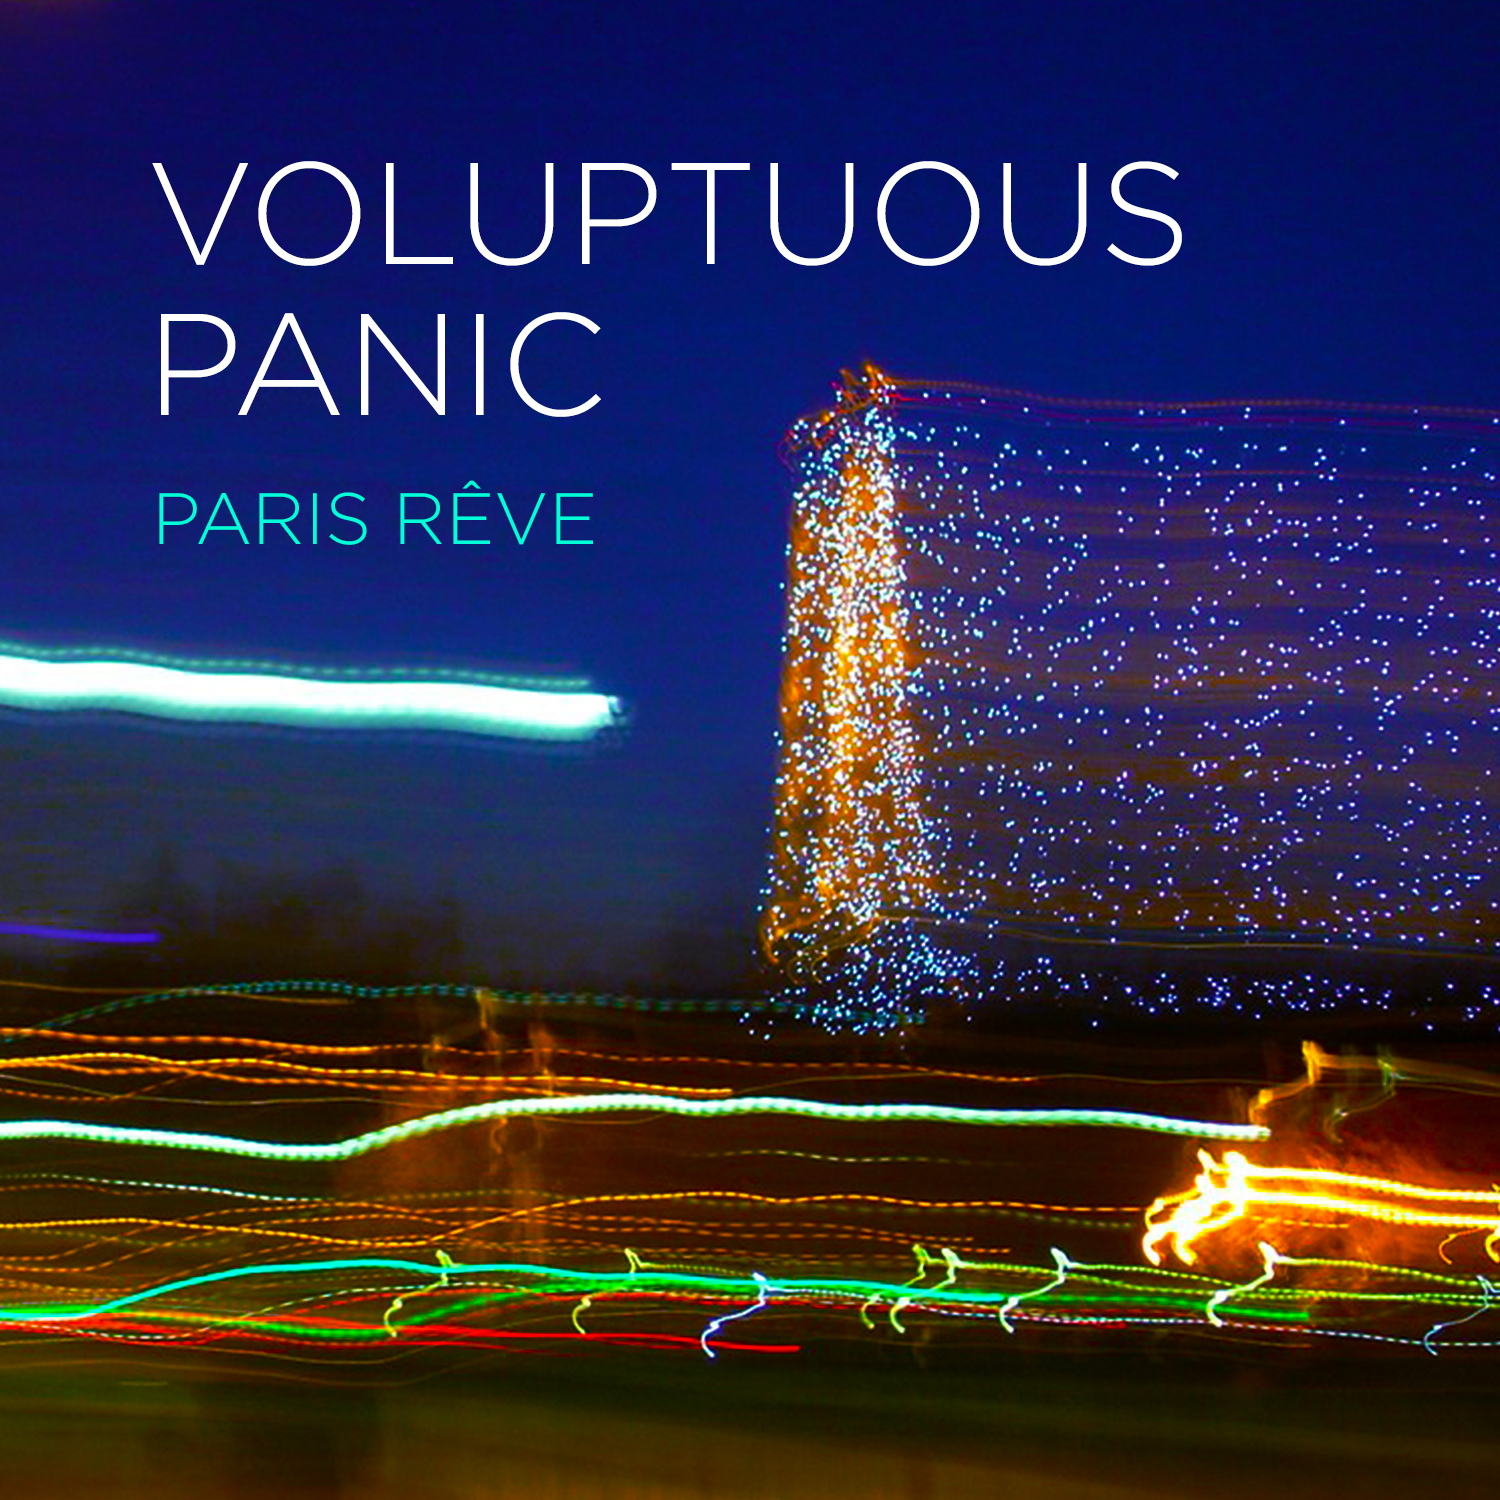 Paris Rêve by Voluptuous Panic